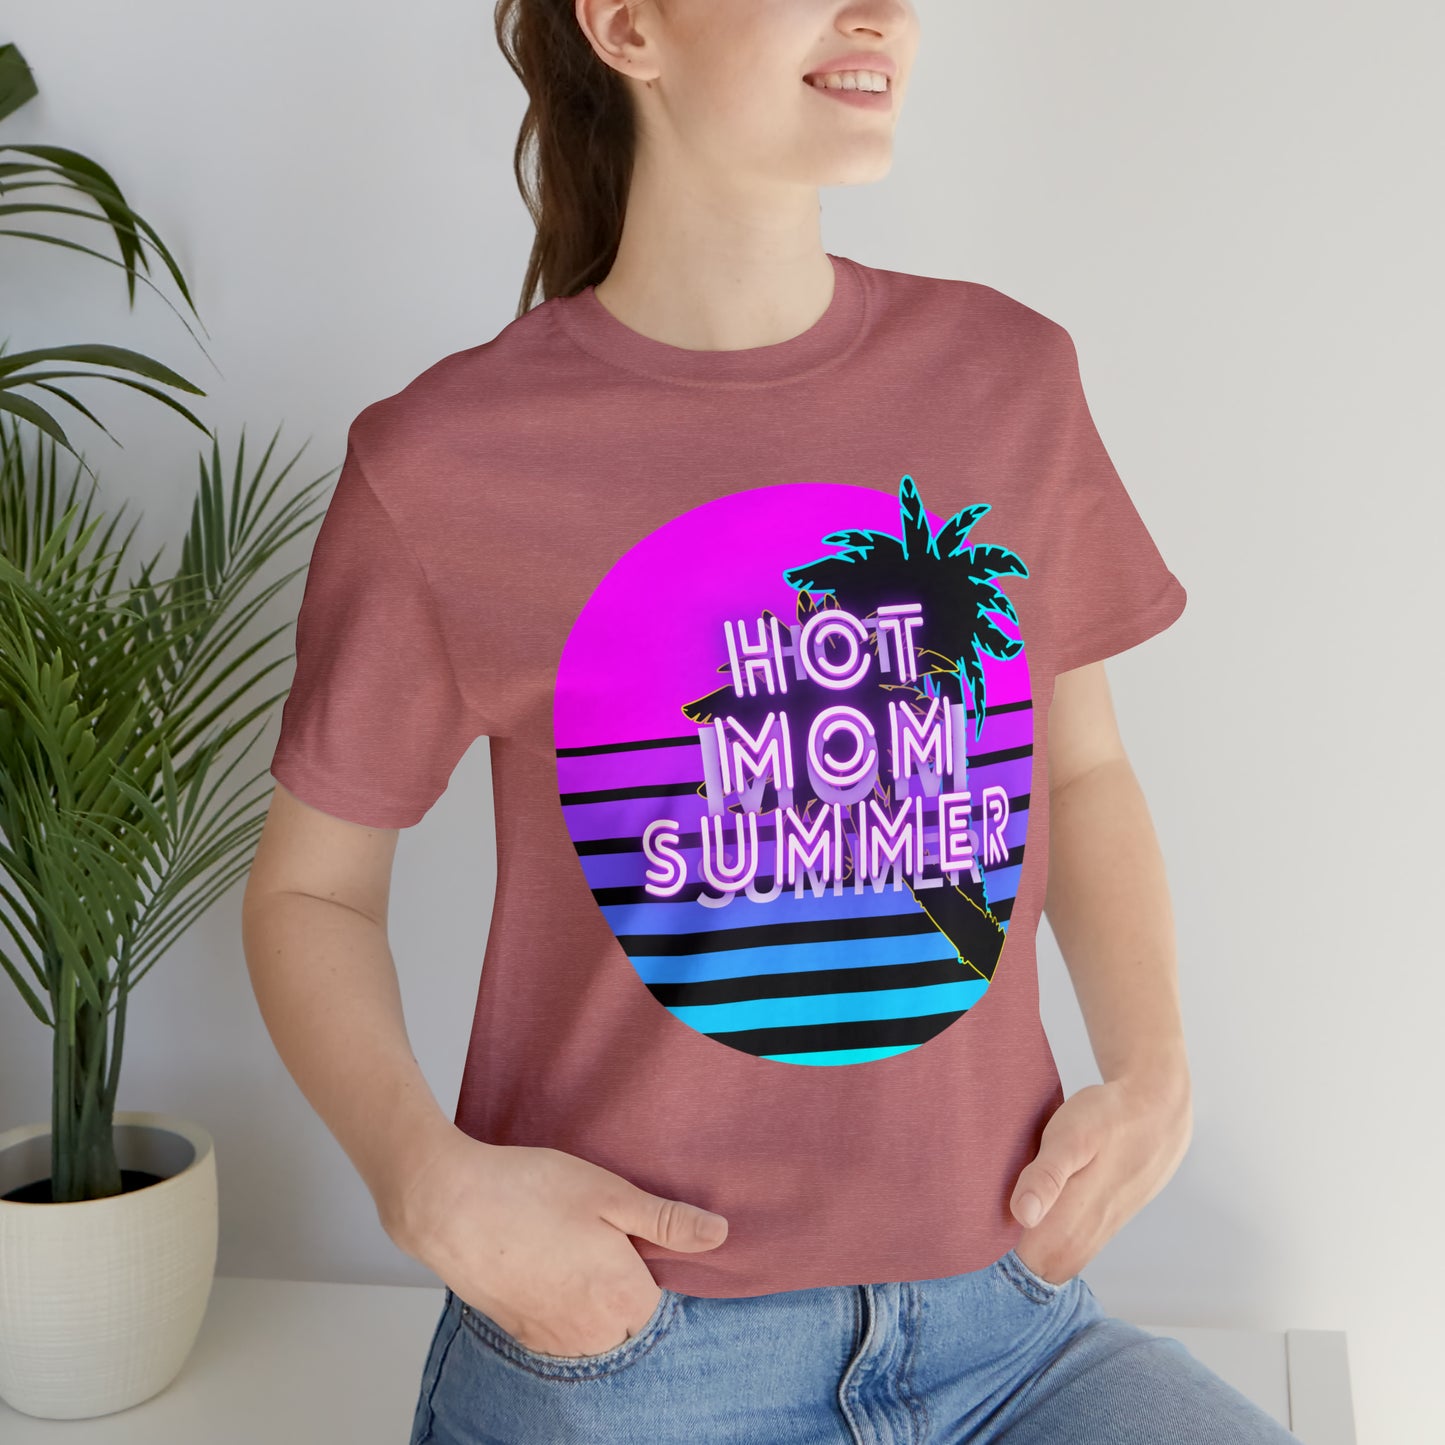 Hot Mom Summer, Shirt